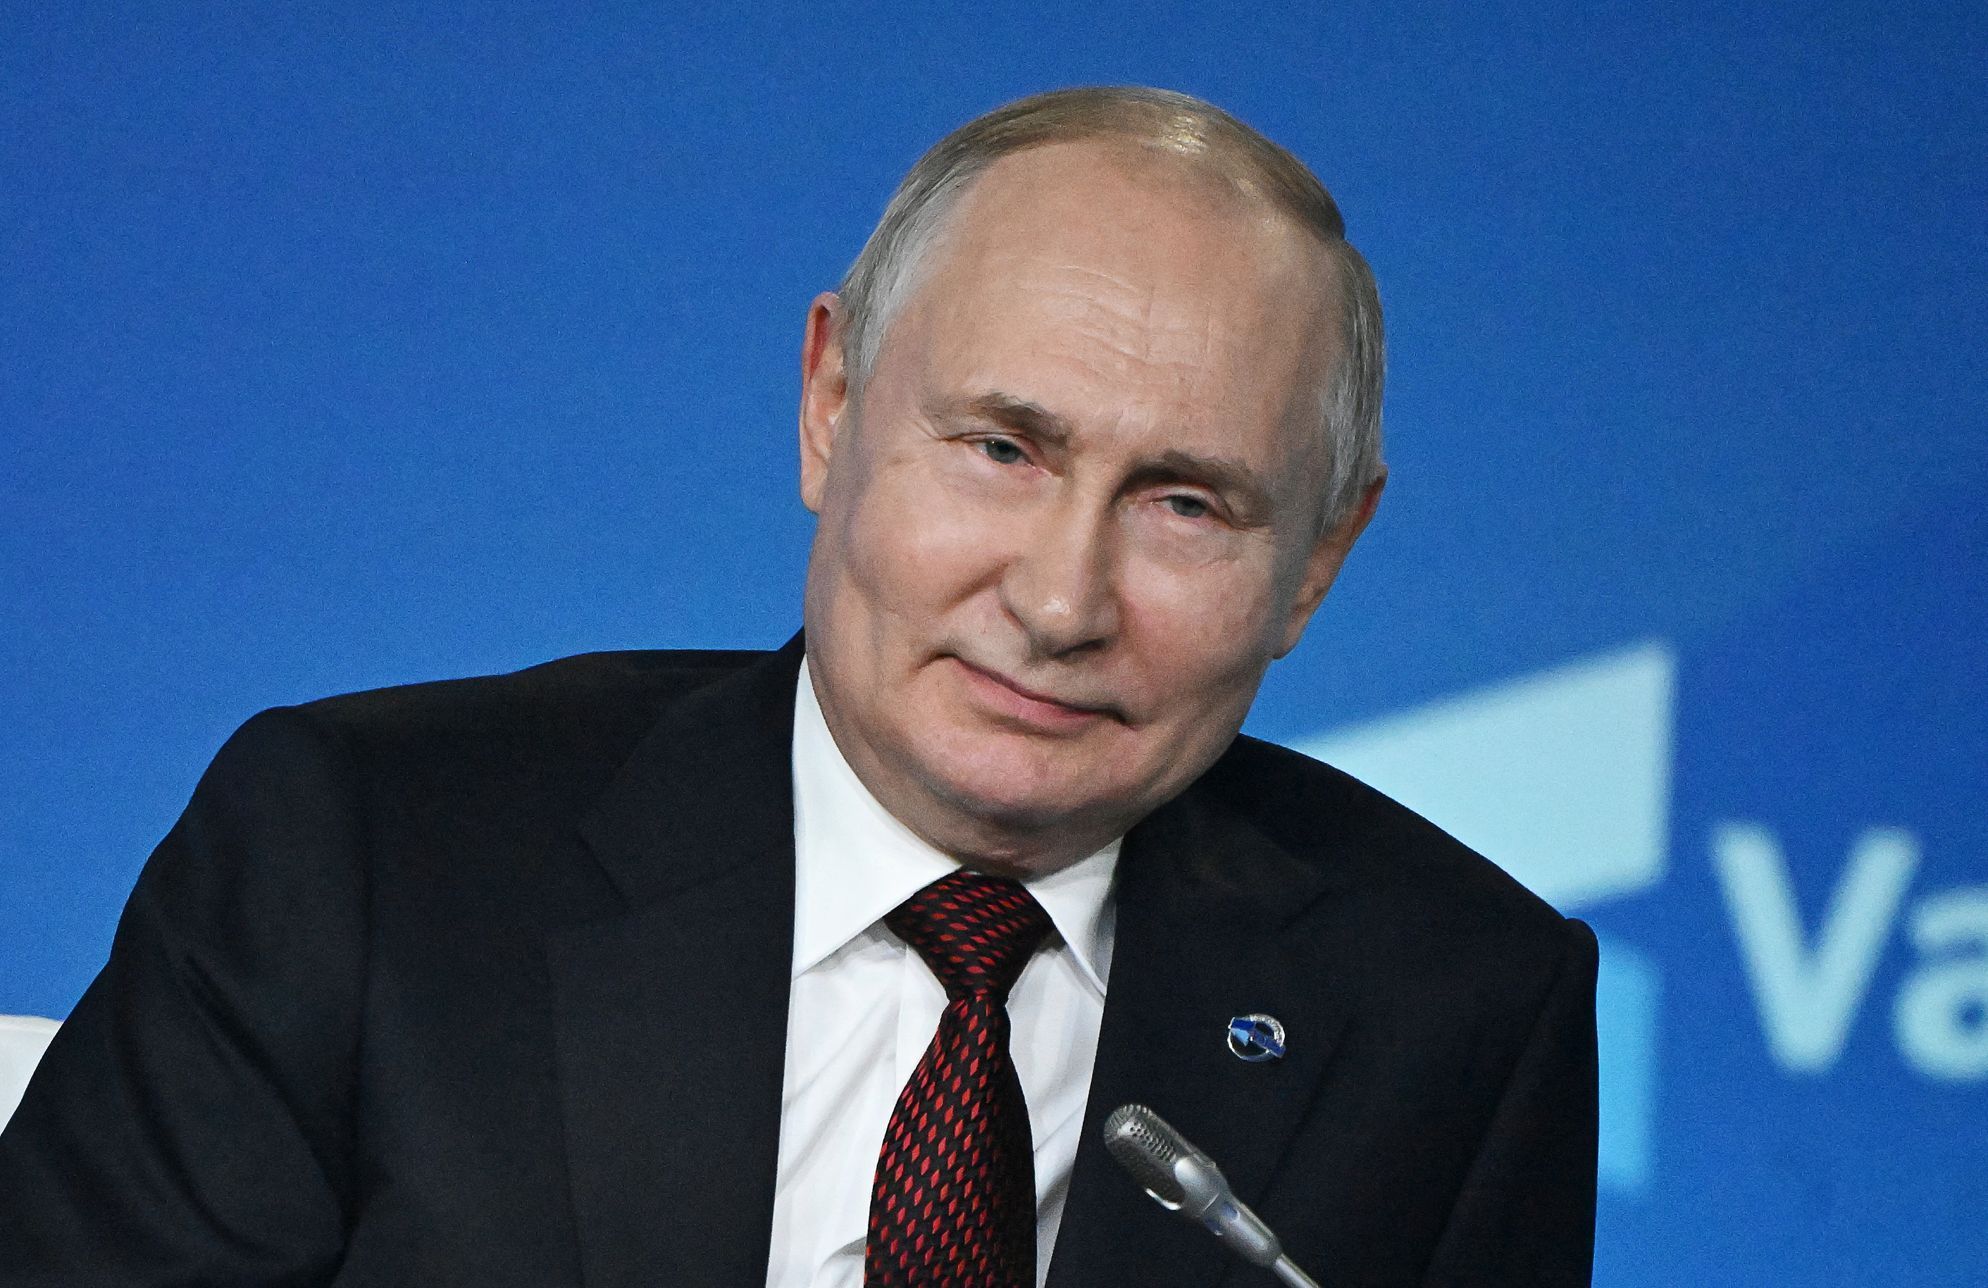 Vladimir Putin na konferenci v Soči